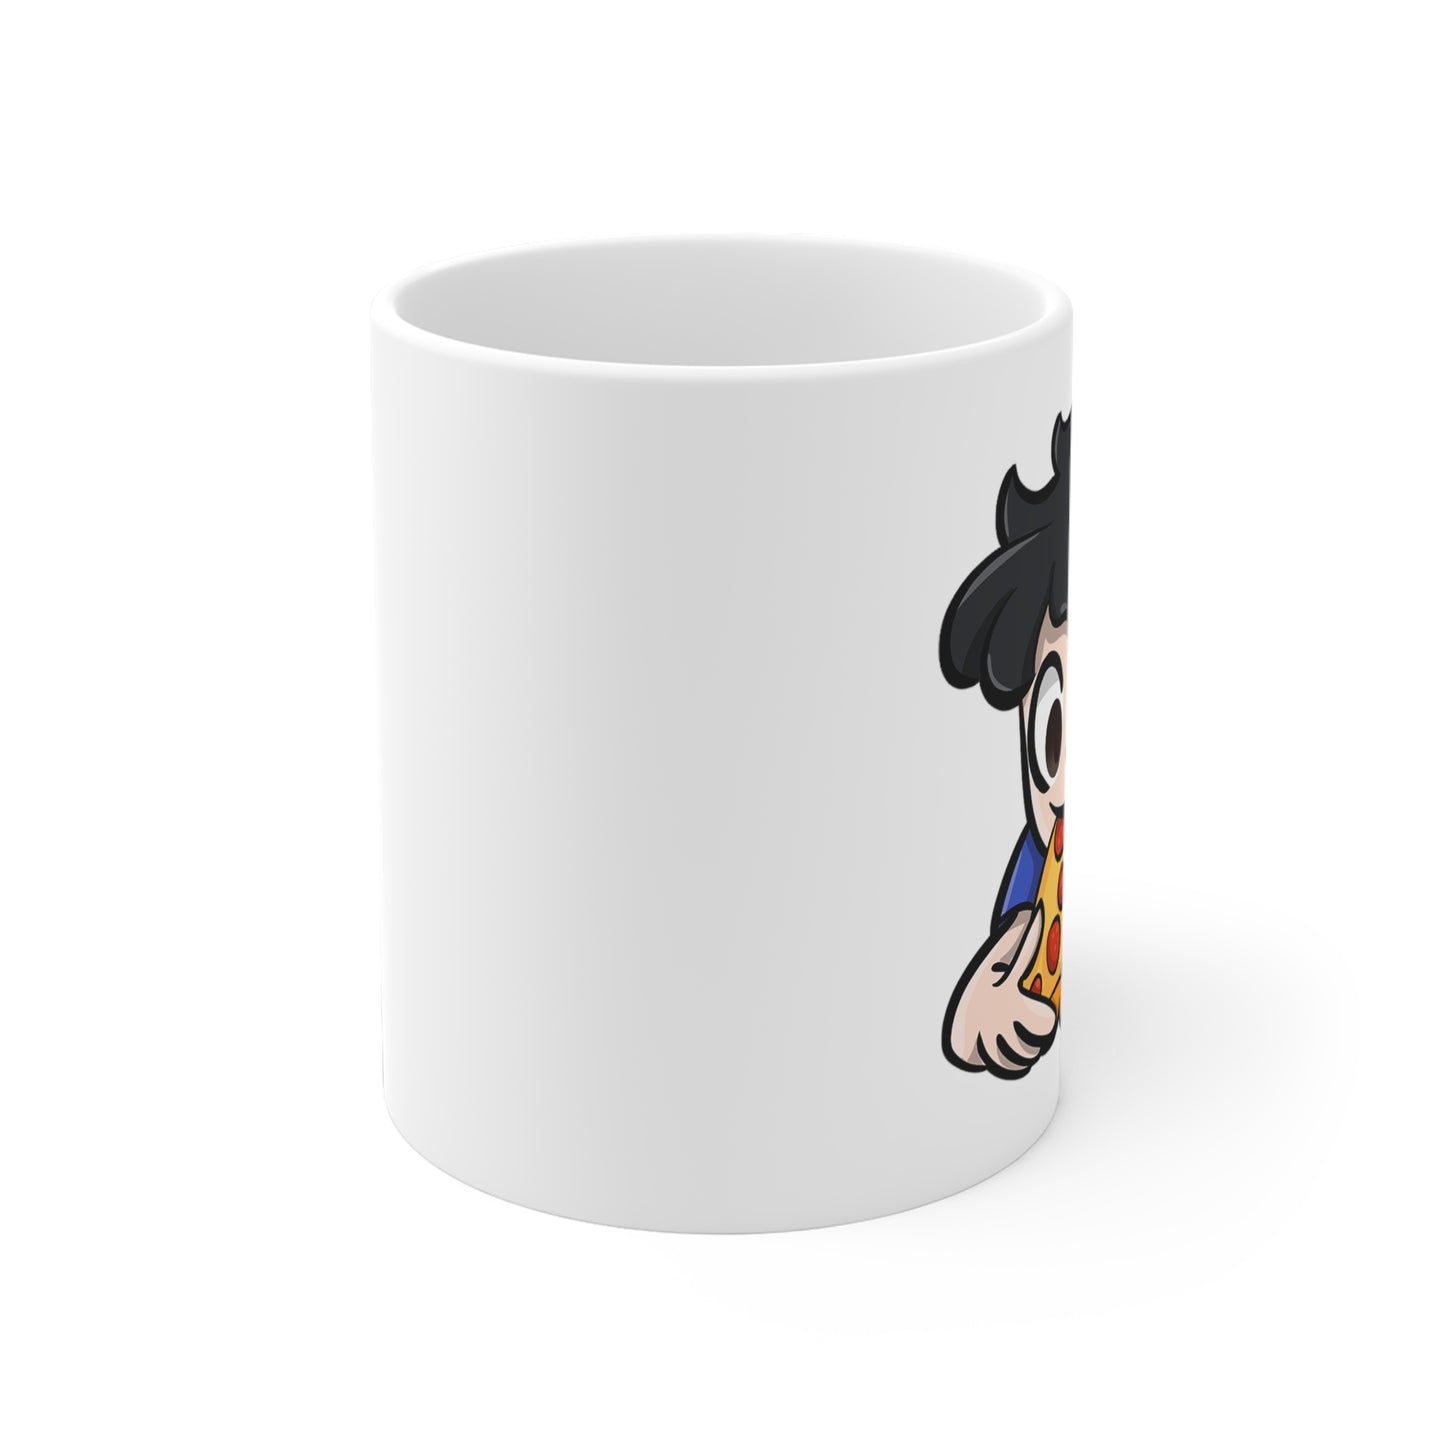 4DavidBlue - Ceramic Mugs (11oz\15oz\20oz)